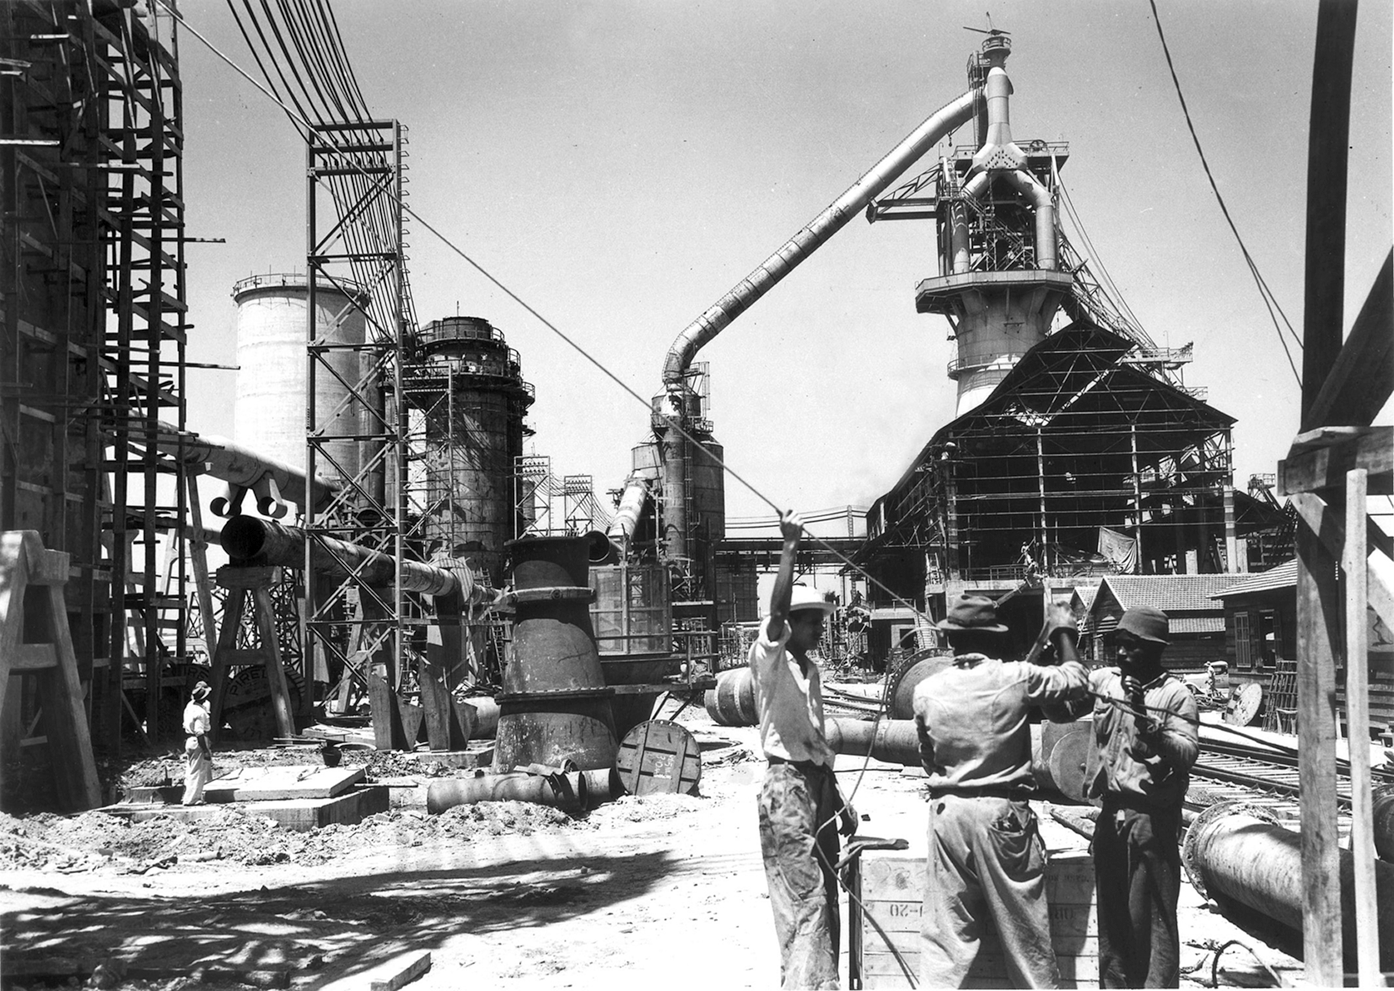 Fotografia em preto e branco. Alguns homens reunidos em uma construção. Há colunas e estruturas de metal interligadas e um galpão ao fundo, à direita.